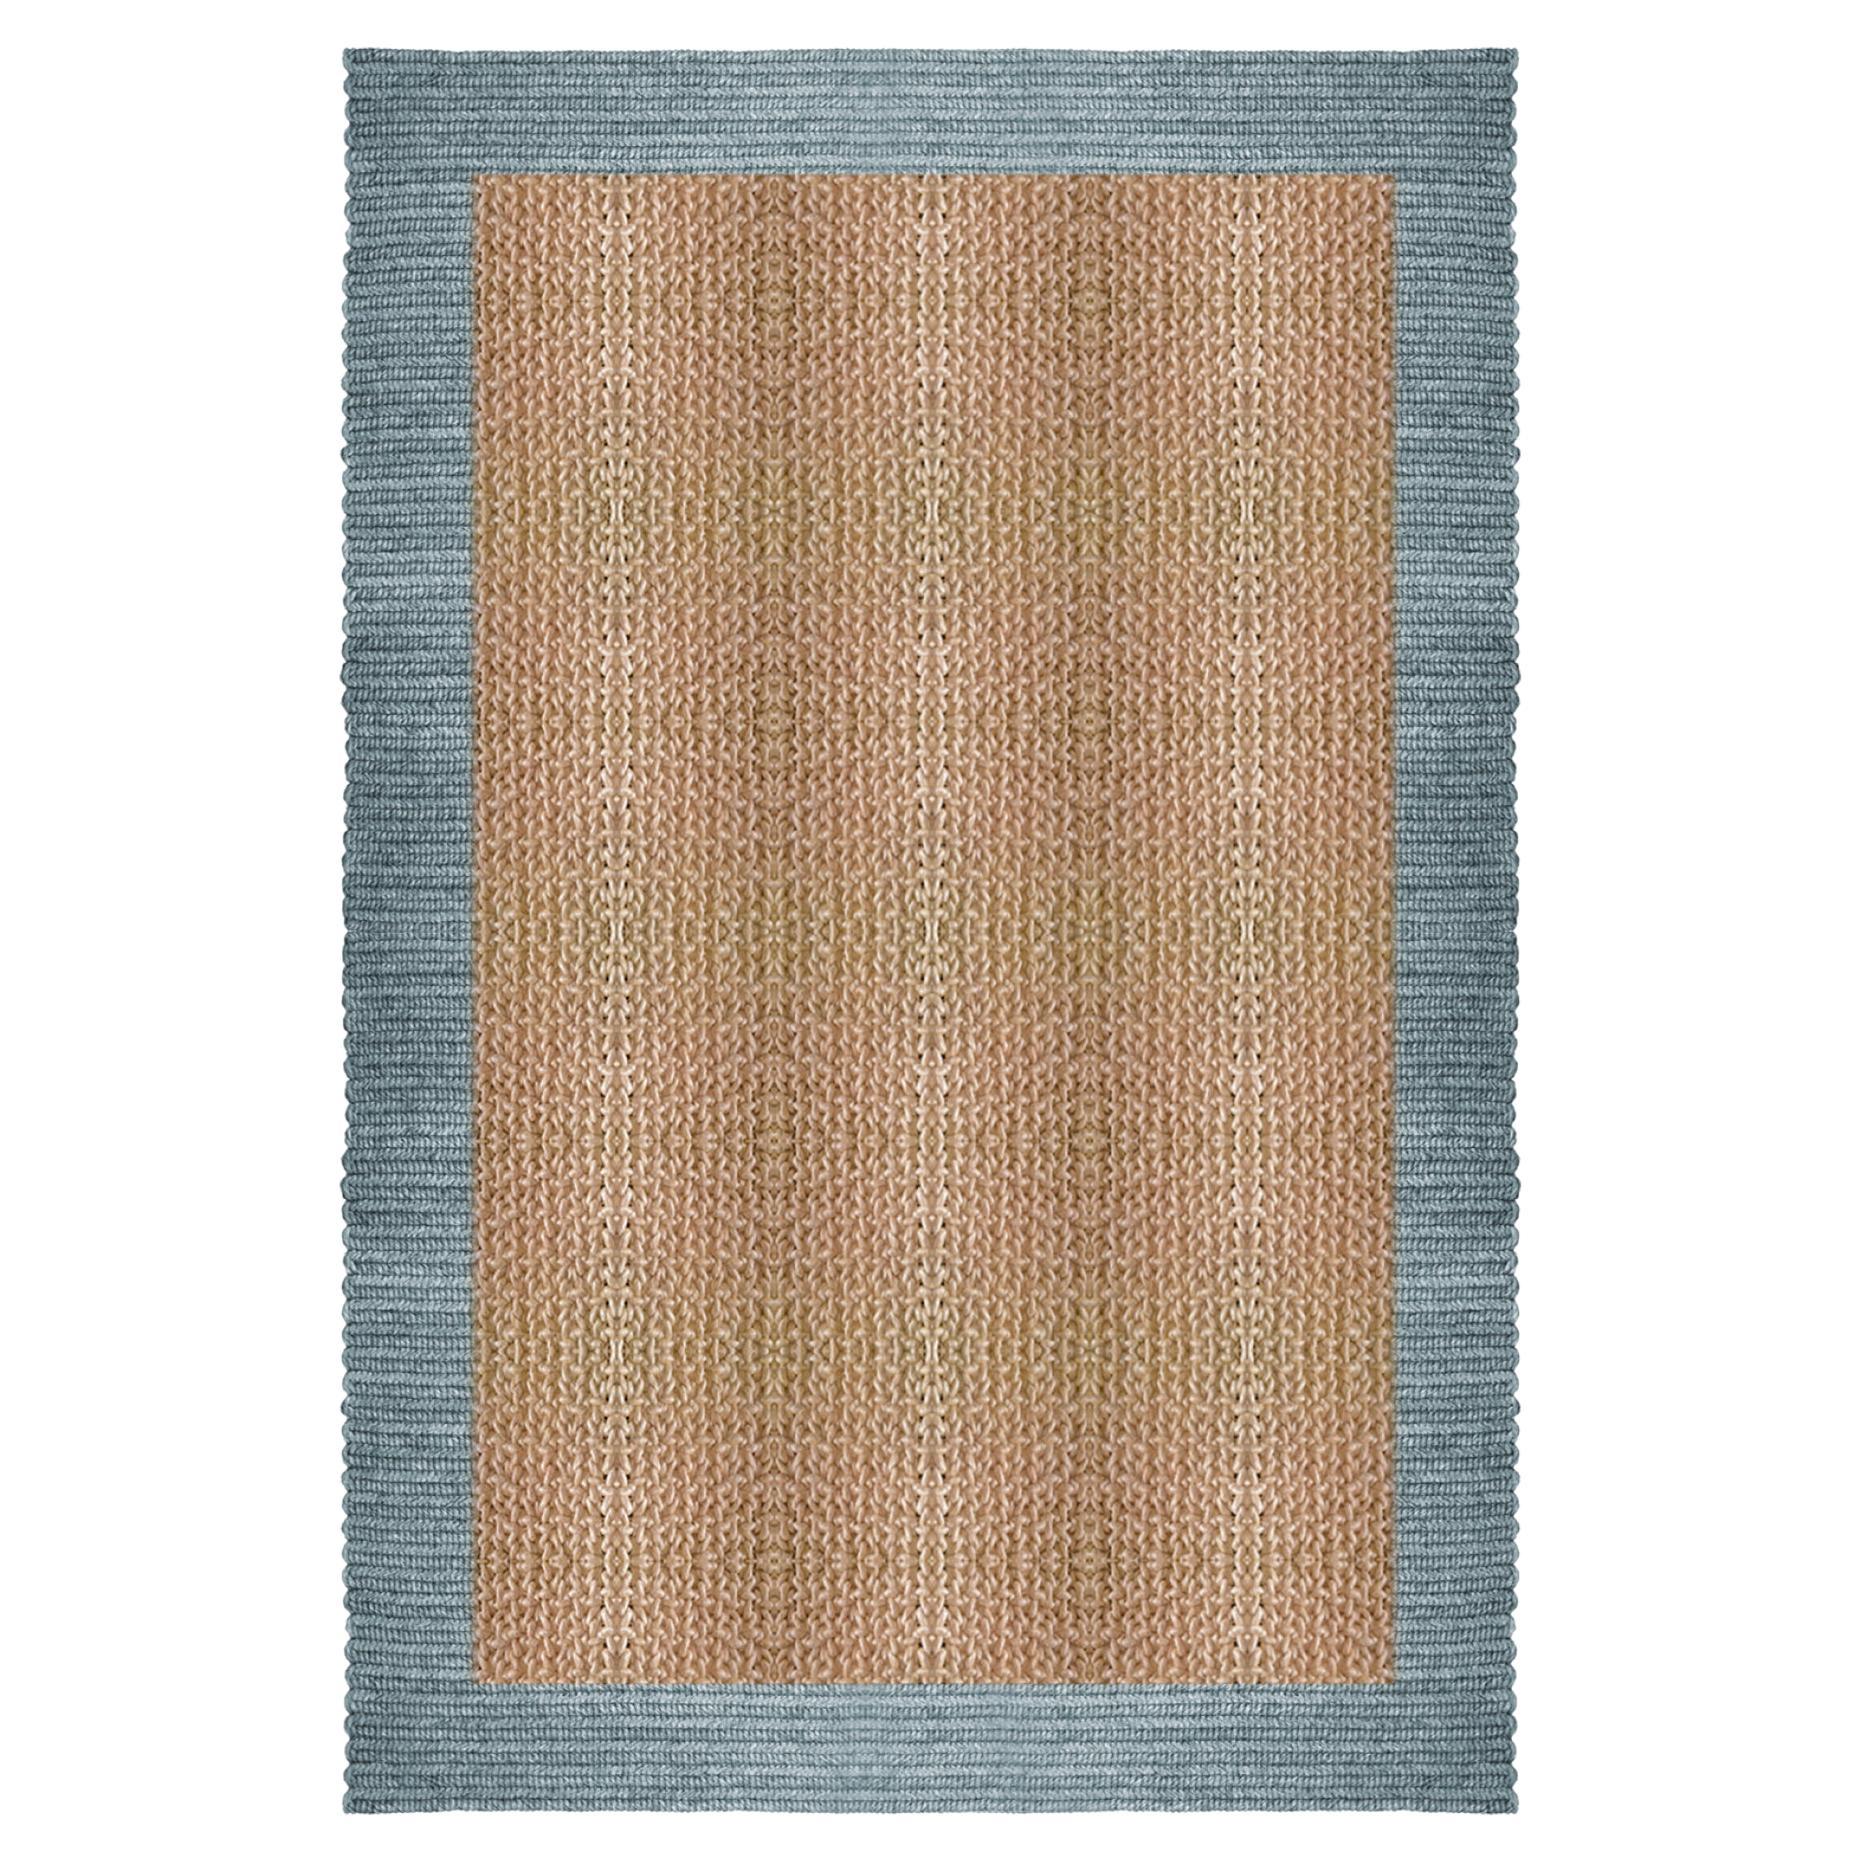 Teppich „Nap Duo“ aus Abaca, 200x300 cm, von Claire Vos für Musett Design